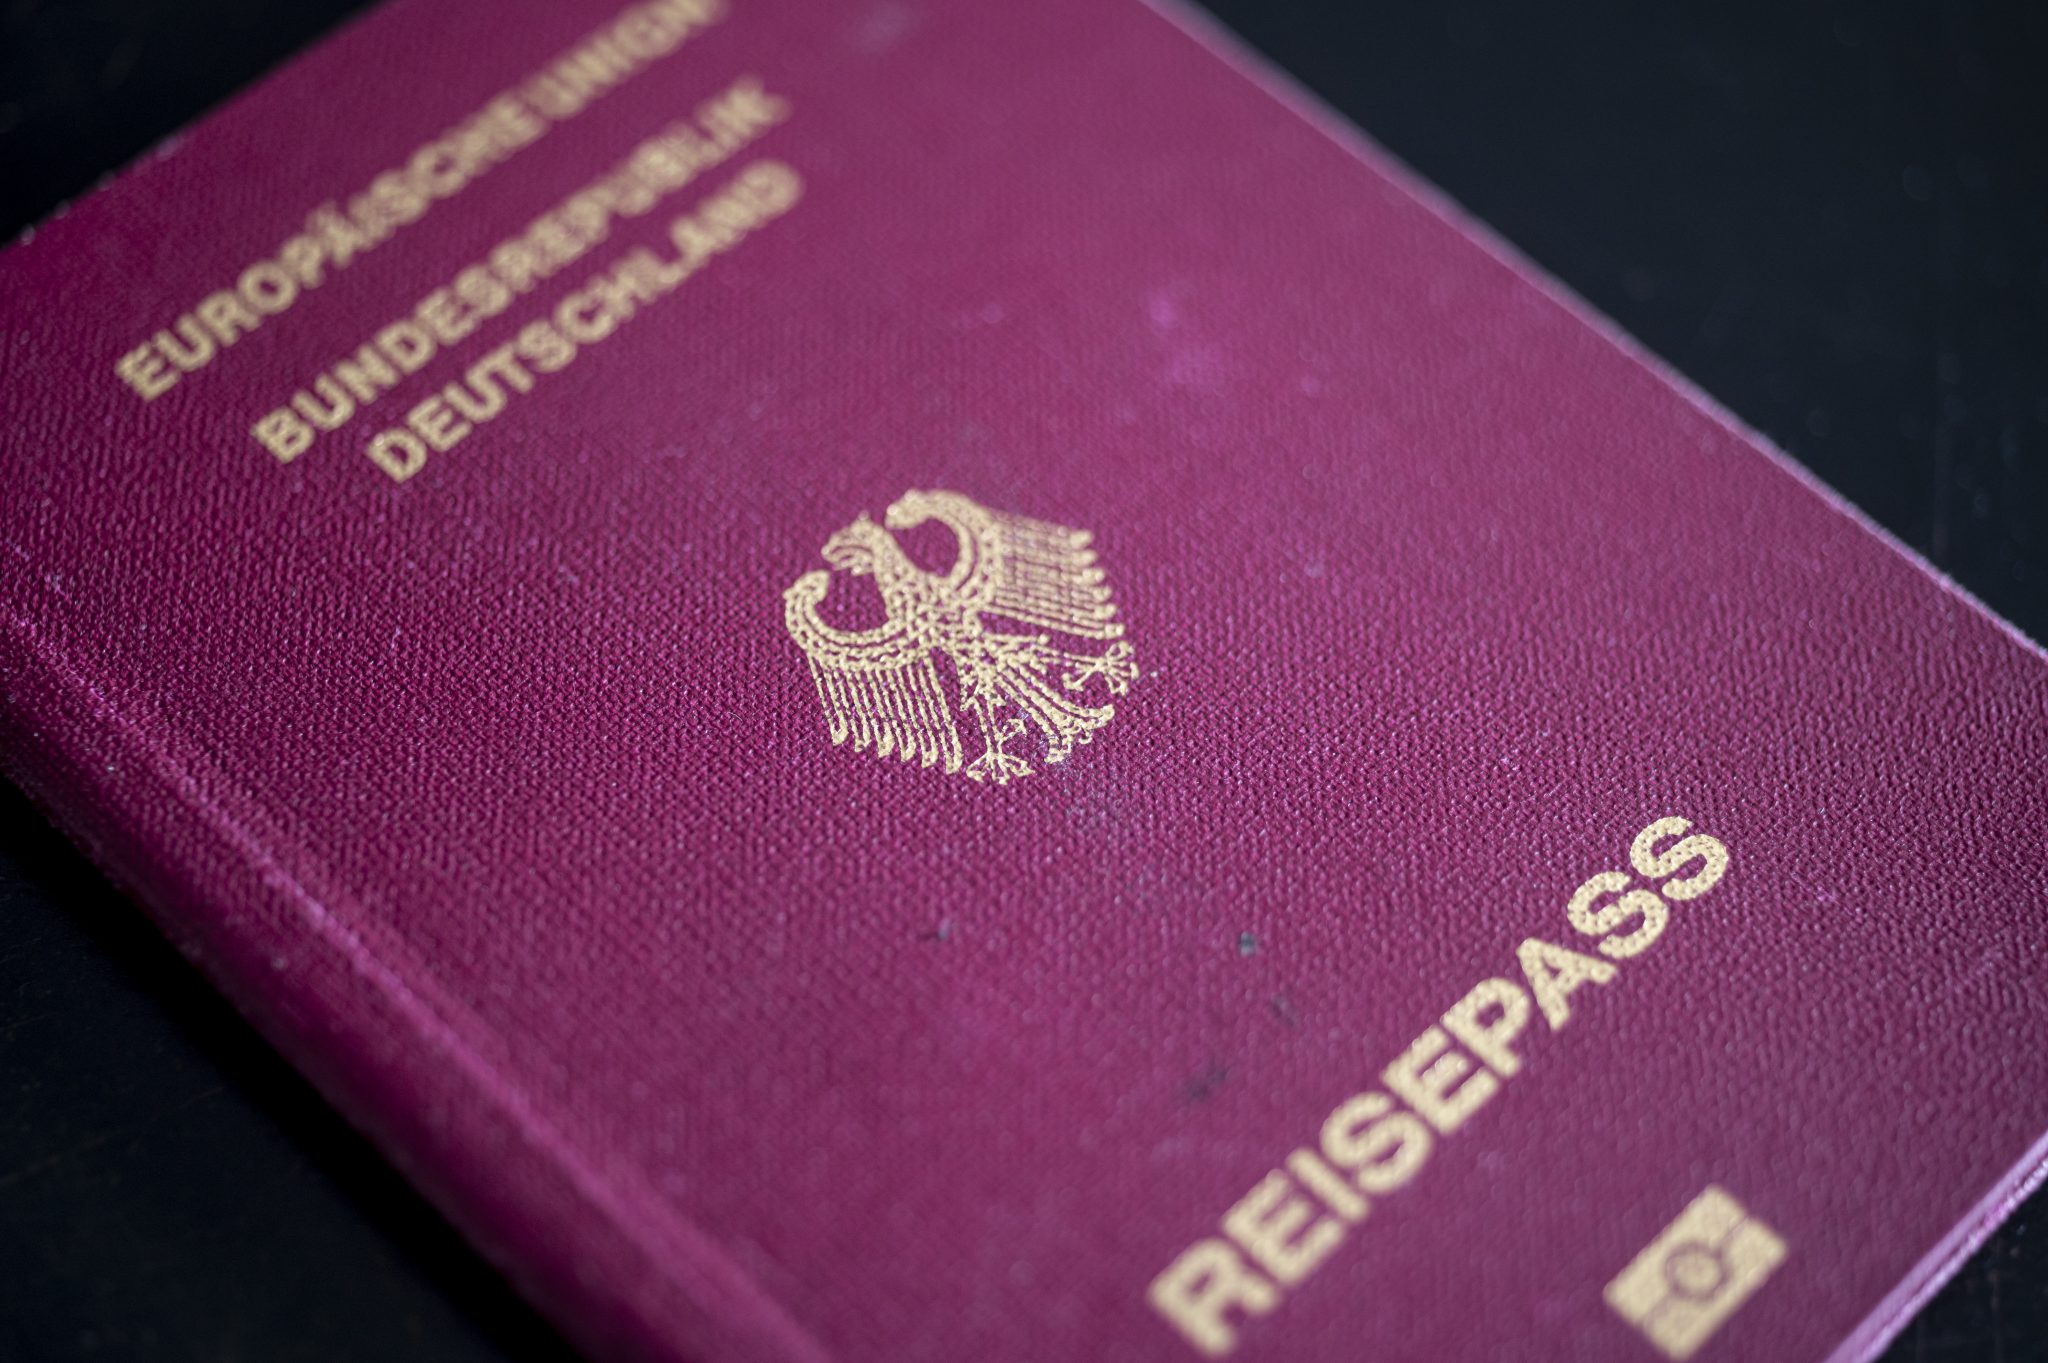 Deutscher Reisepaß: Einbürgerungen gehen insgesamt zurück